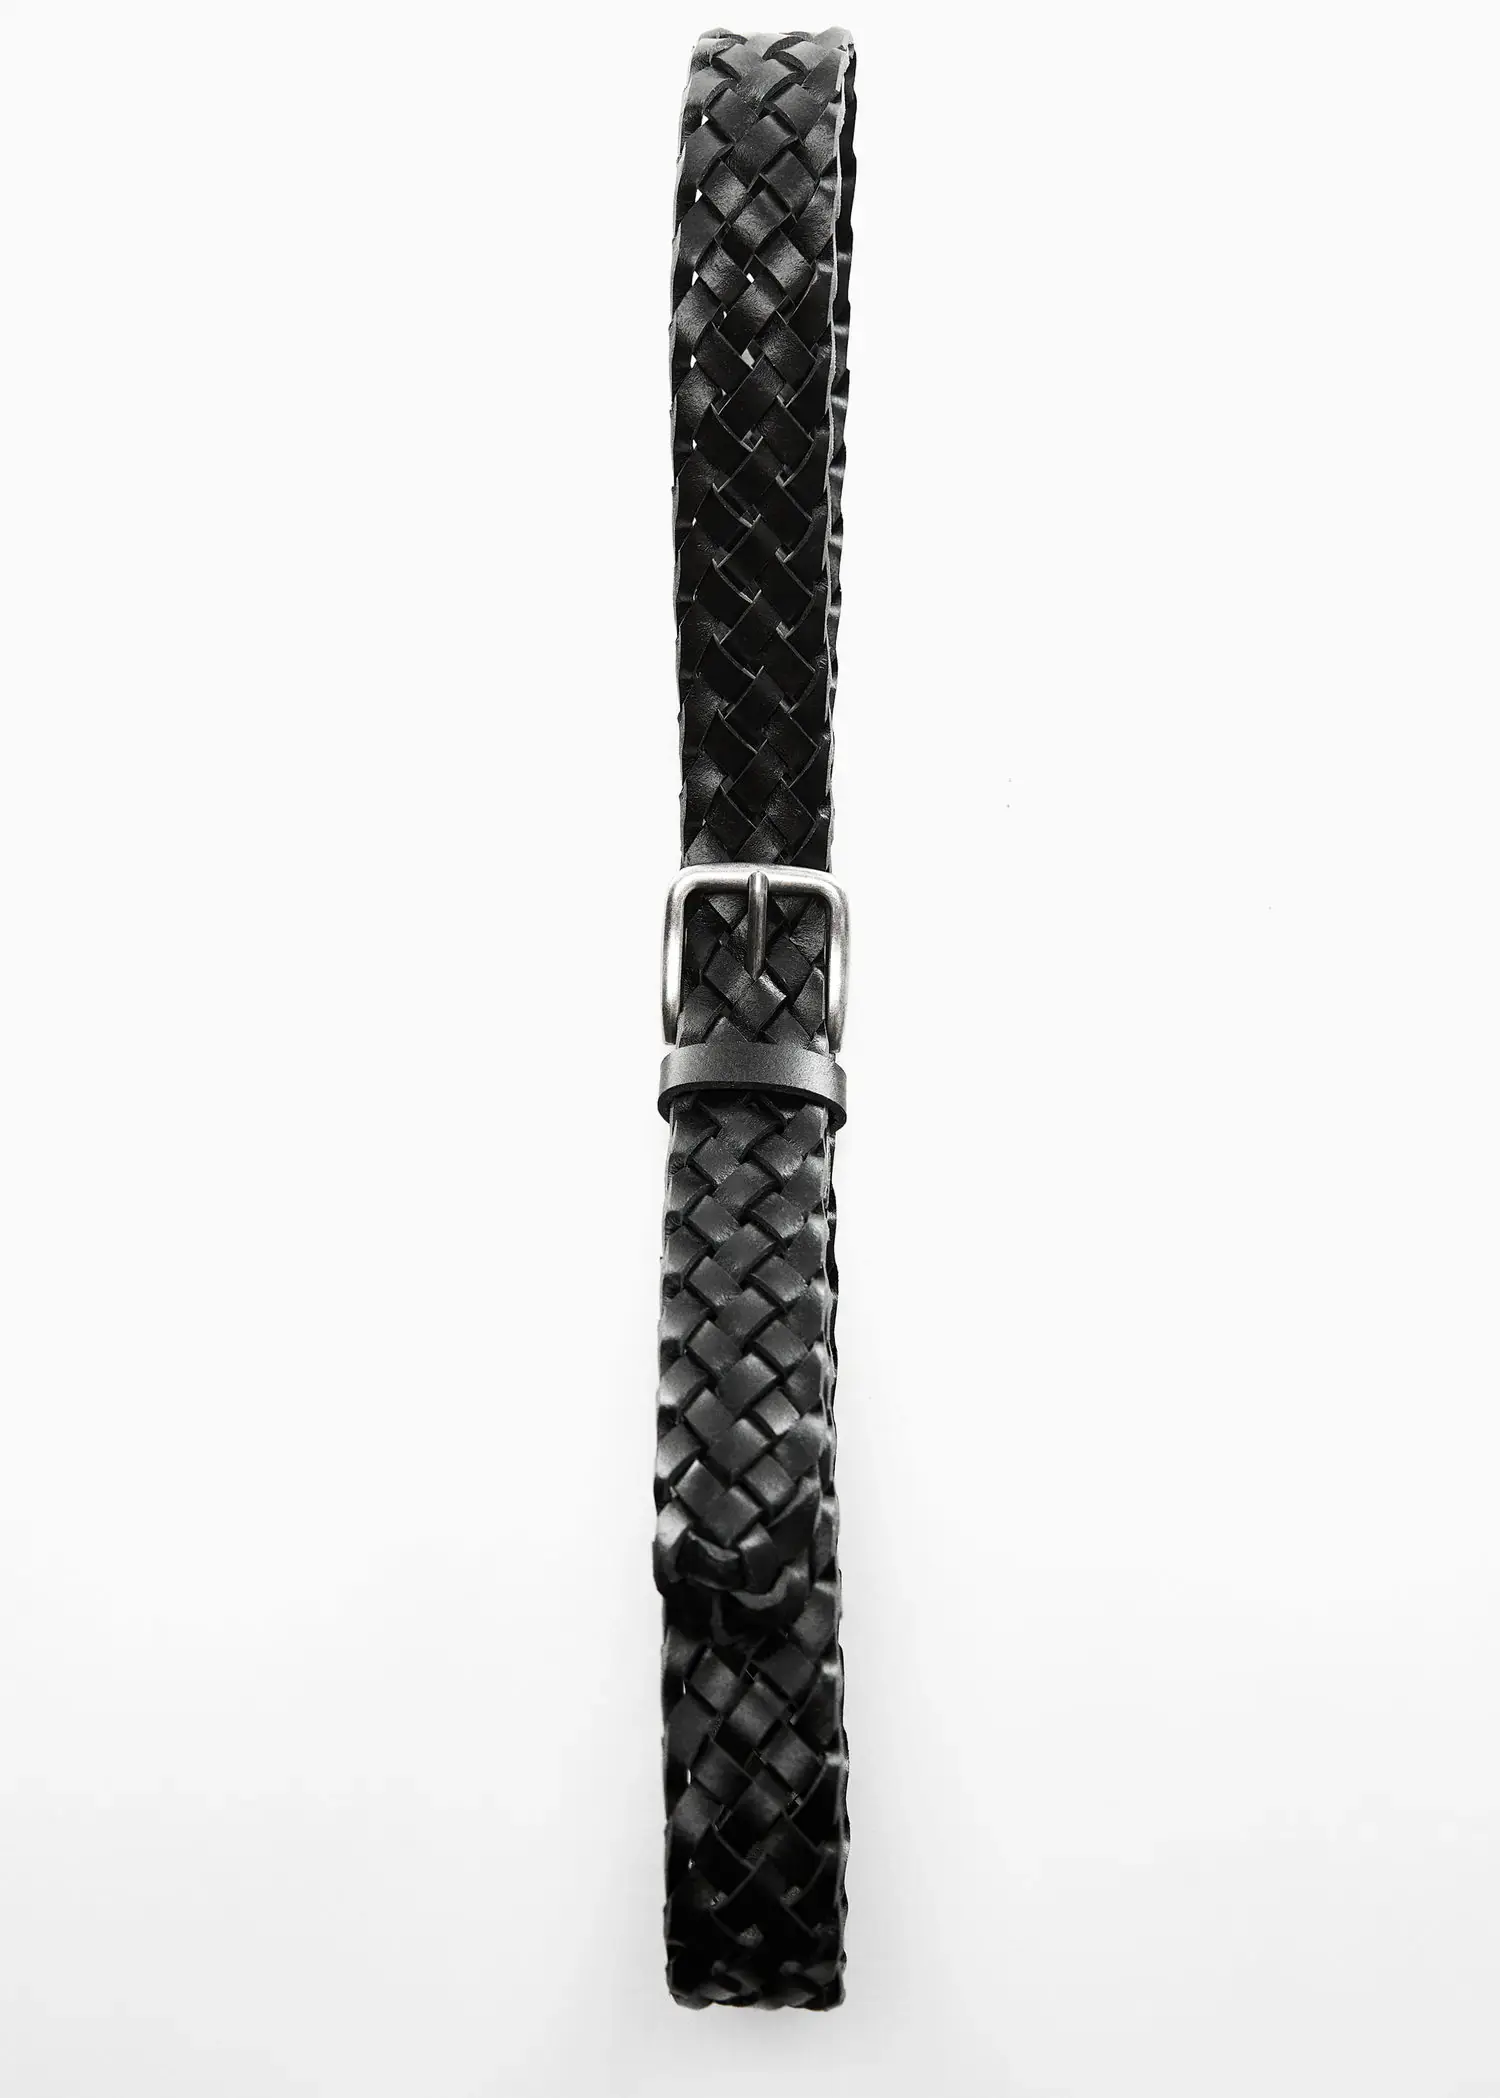 Mango Braided leather belt. 3